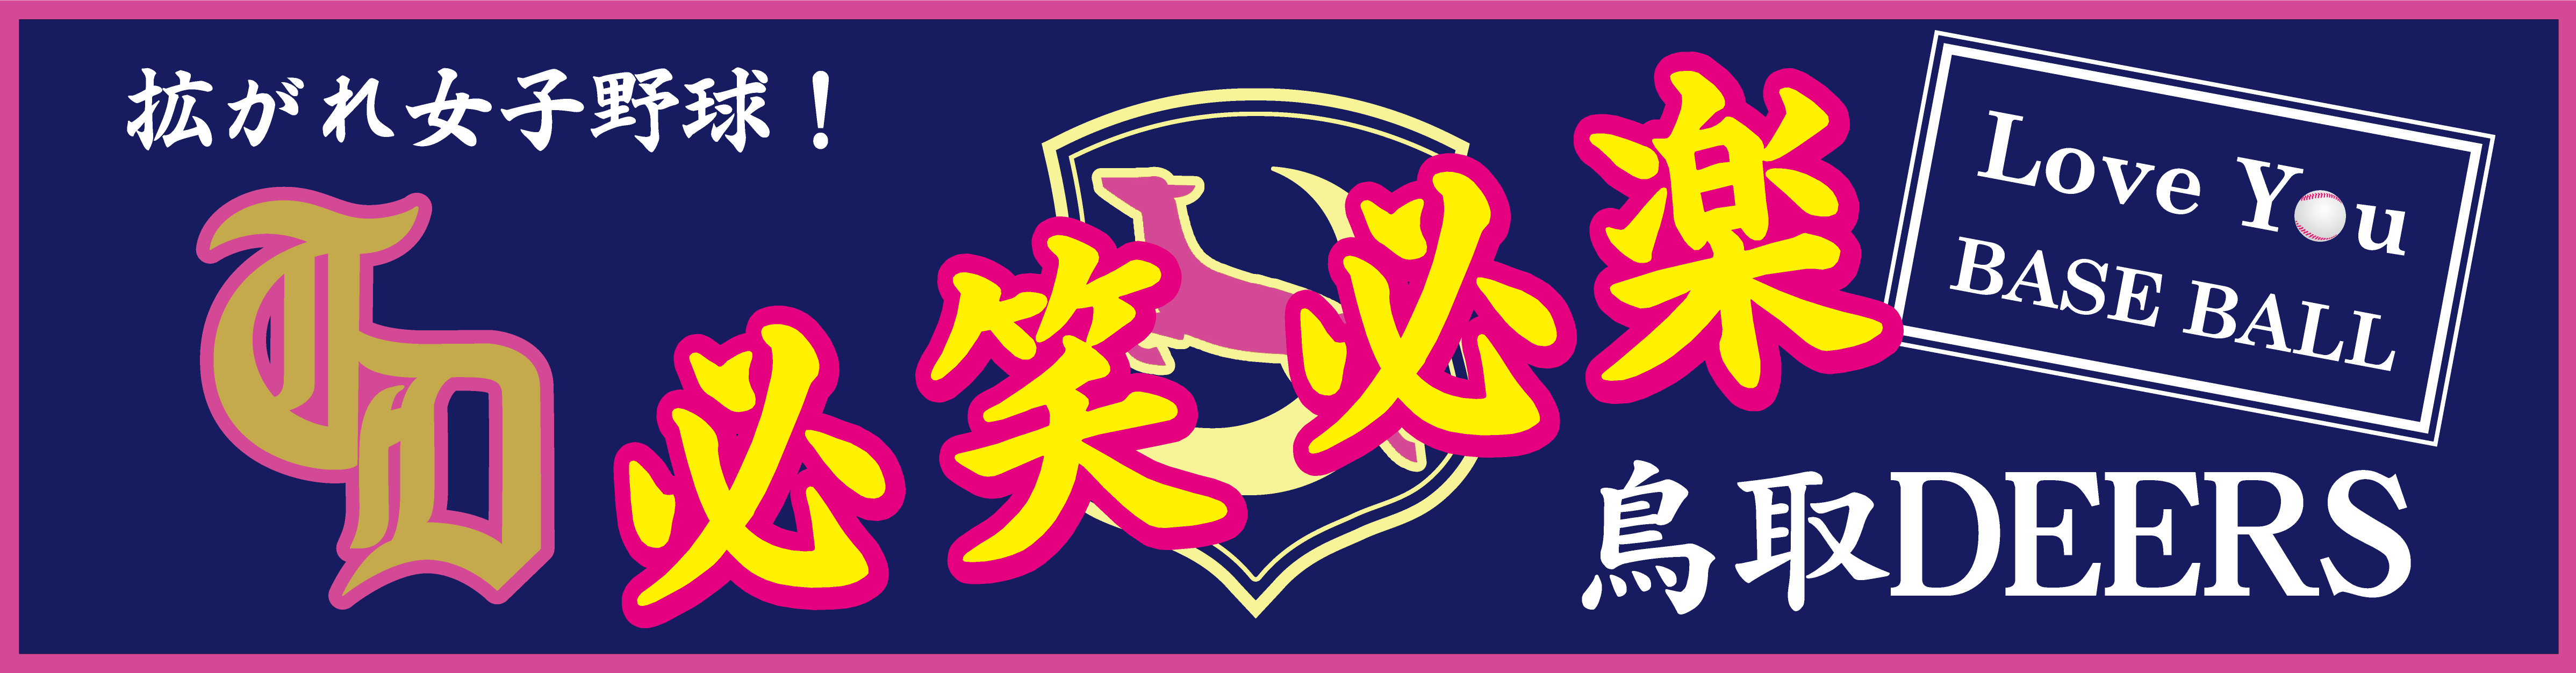 鳥取ディアーズのチームスローガンの画像